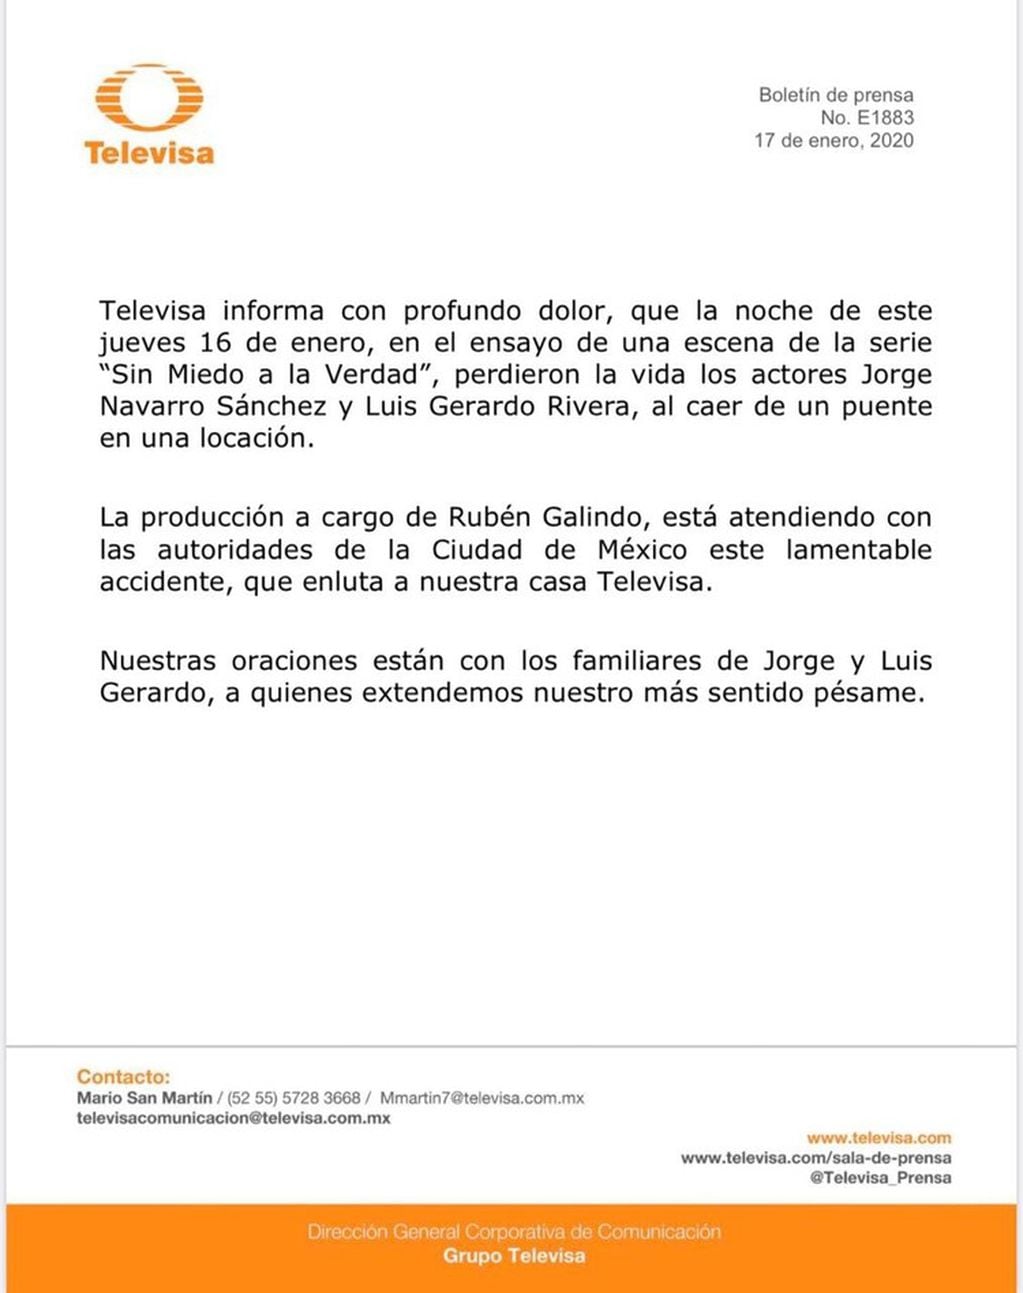 El comunicado oficial de Televisa para confirmar la muerte de los actores  Jorge Navarro y Luis Gerardo